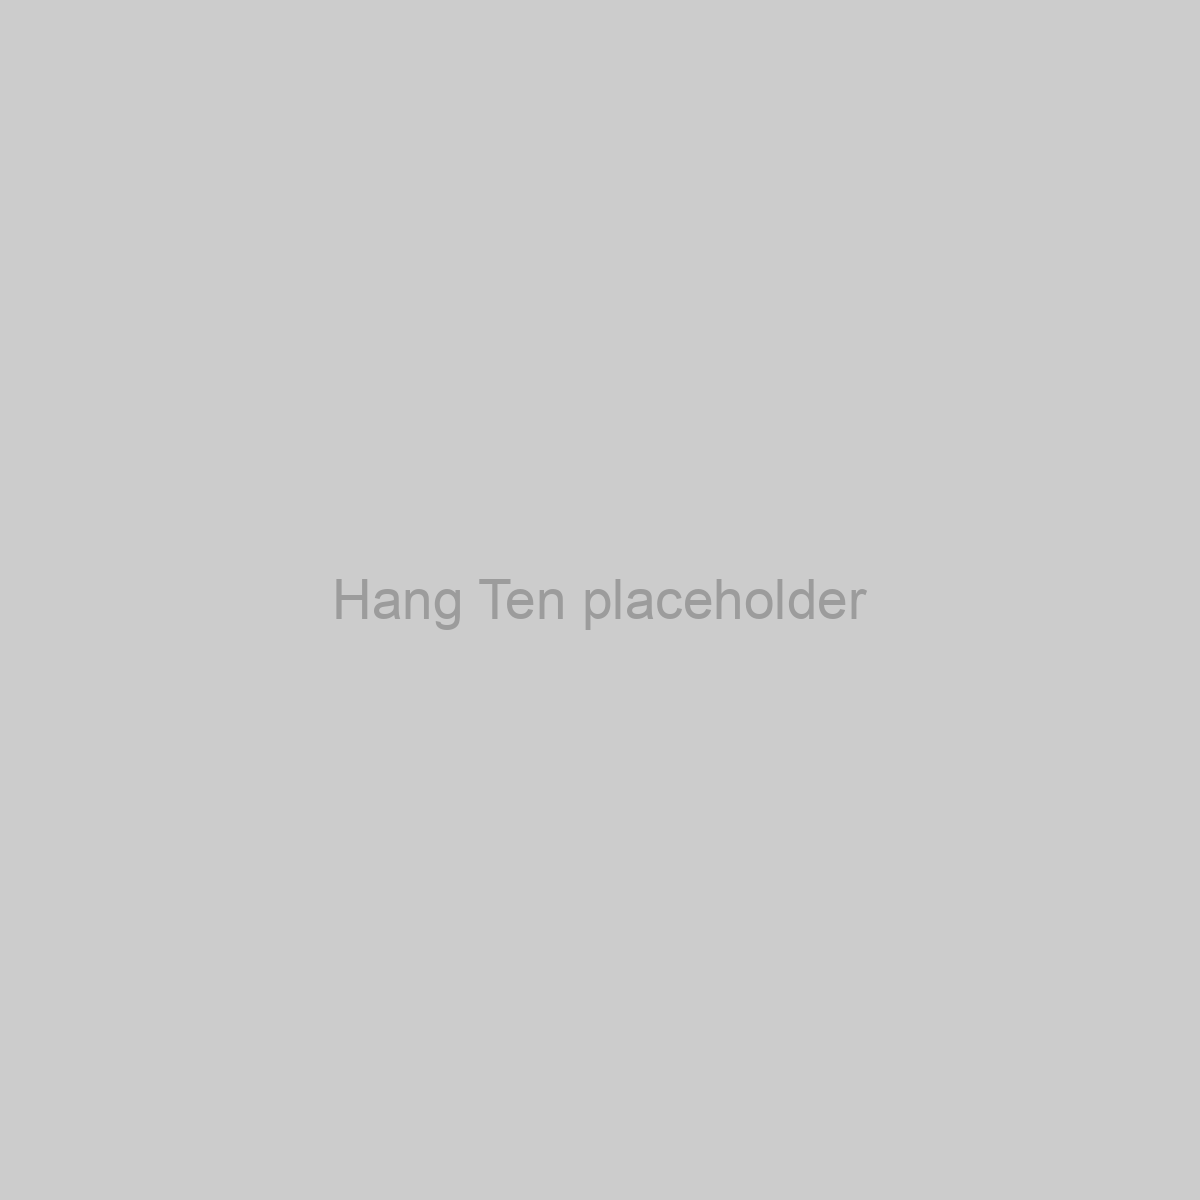 Hang Ten Placeholder Image